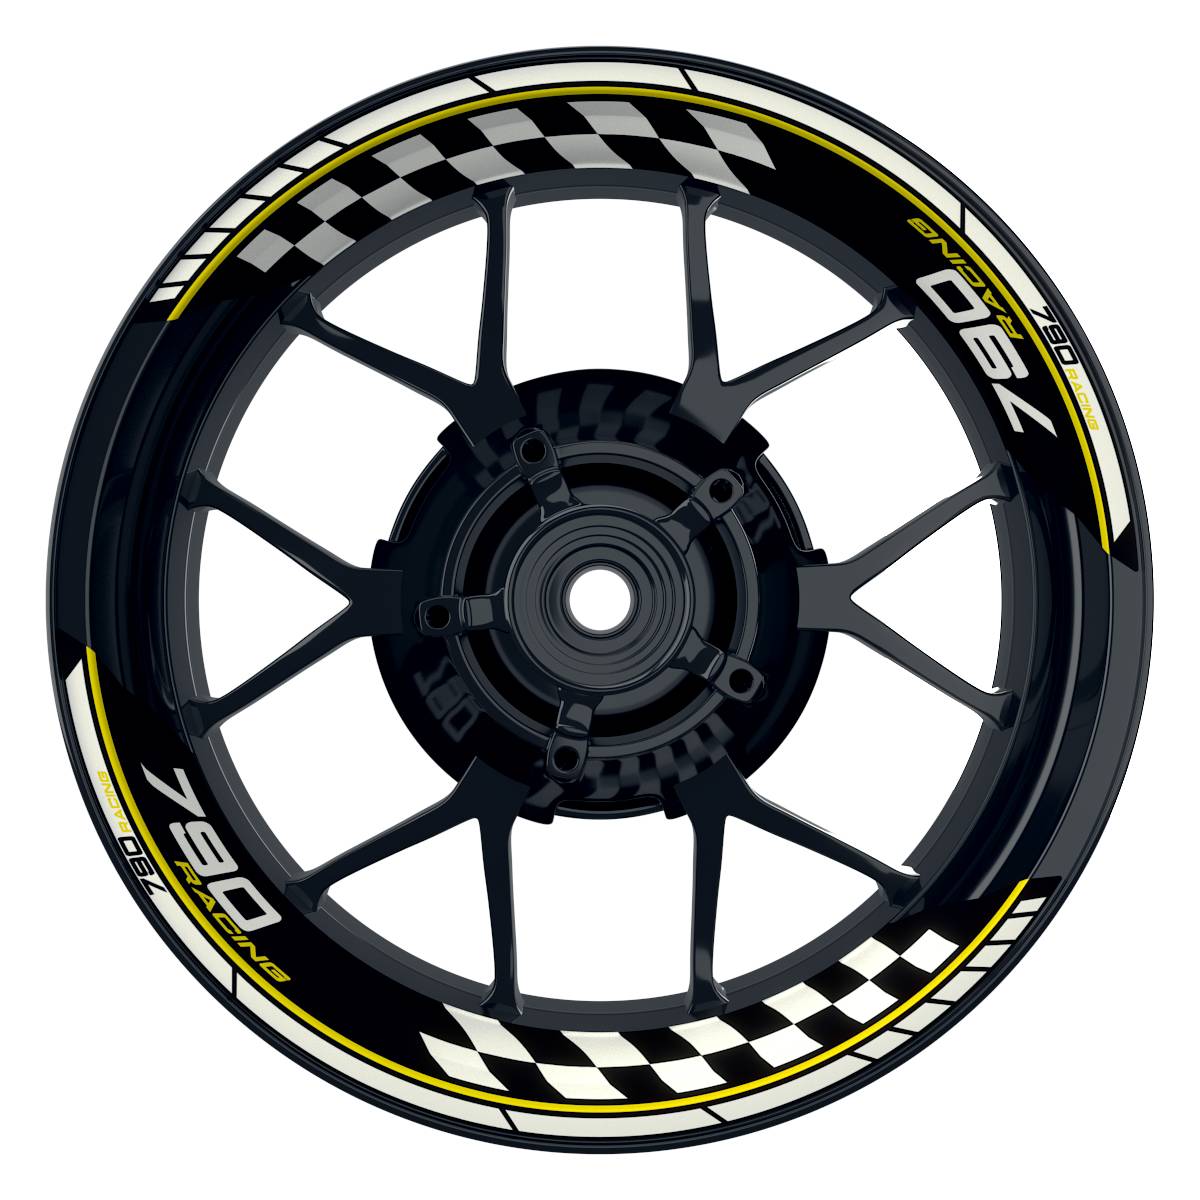 KTM Racing 790 Grid schwarz gelb Frontansicht